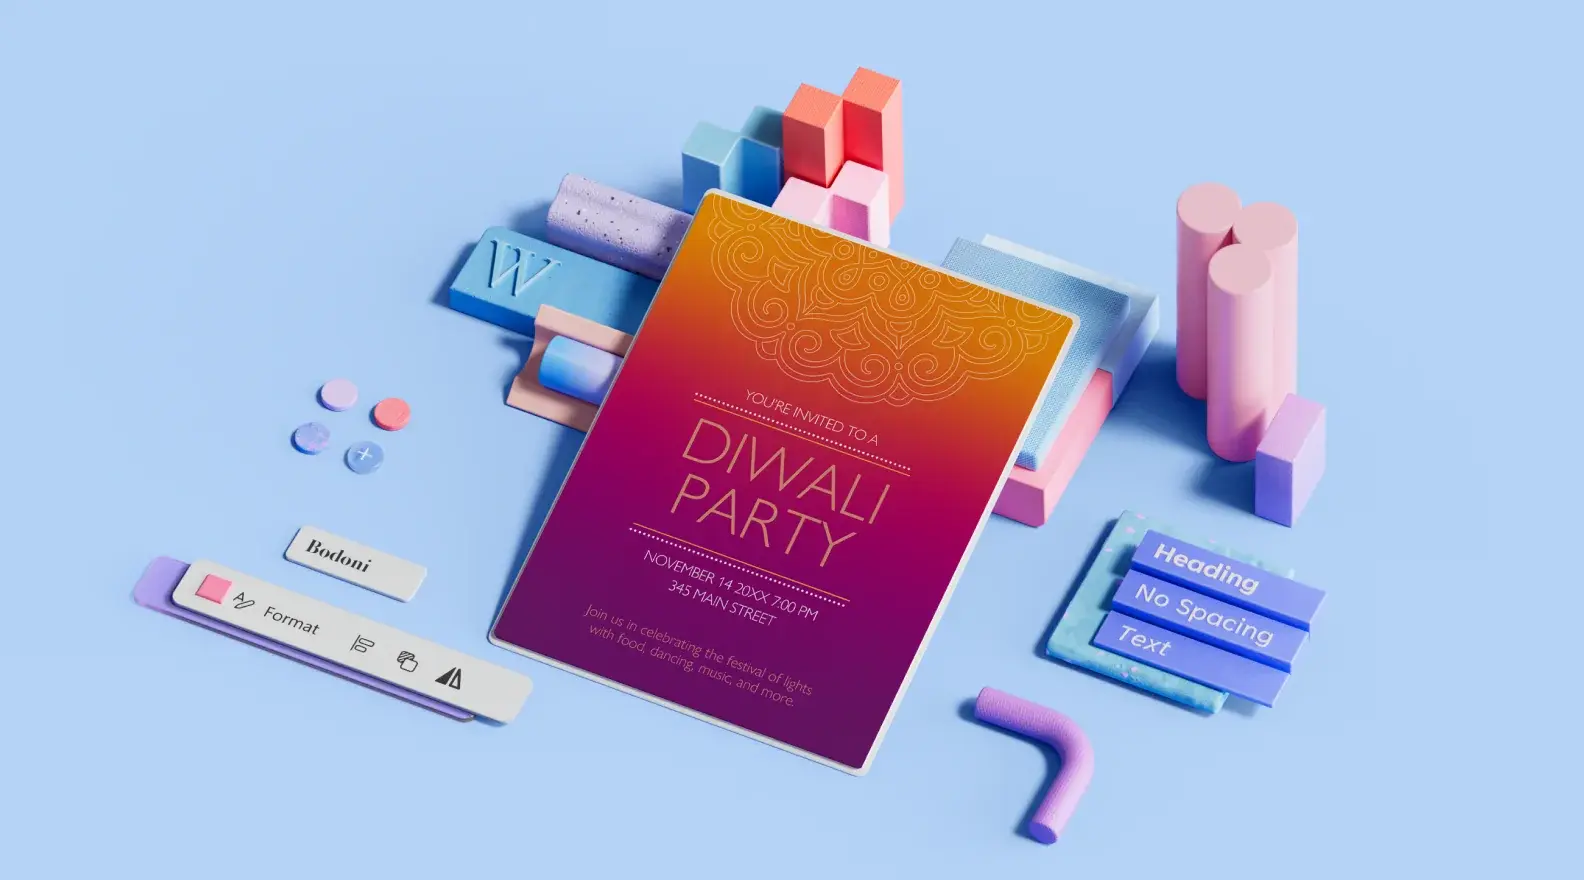 Díváli-partira szóló eseményplakát-sablon 3D-s tervezőelemekkel körülvéve